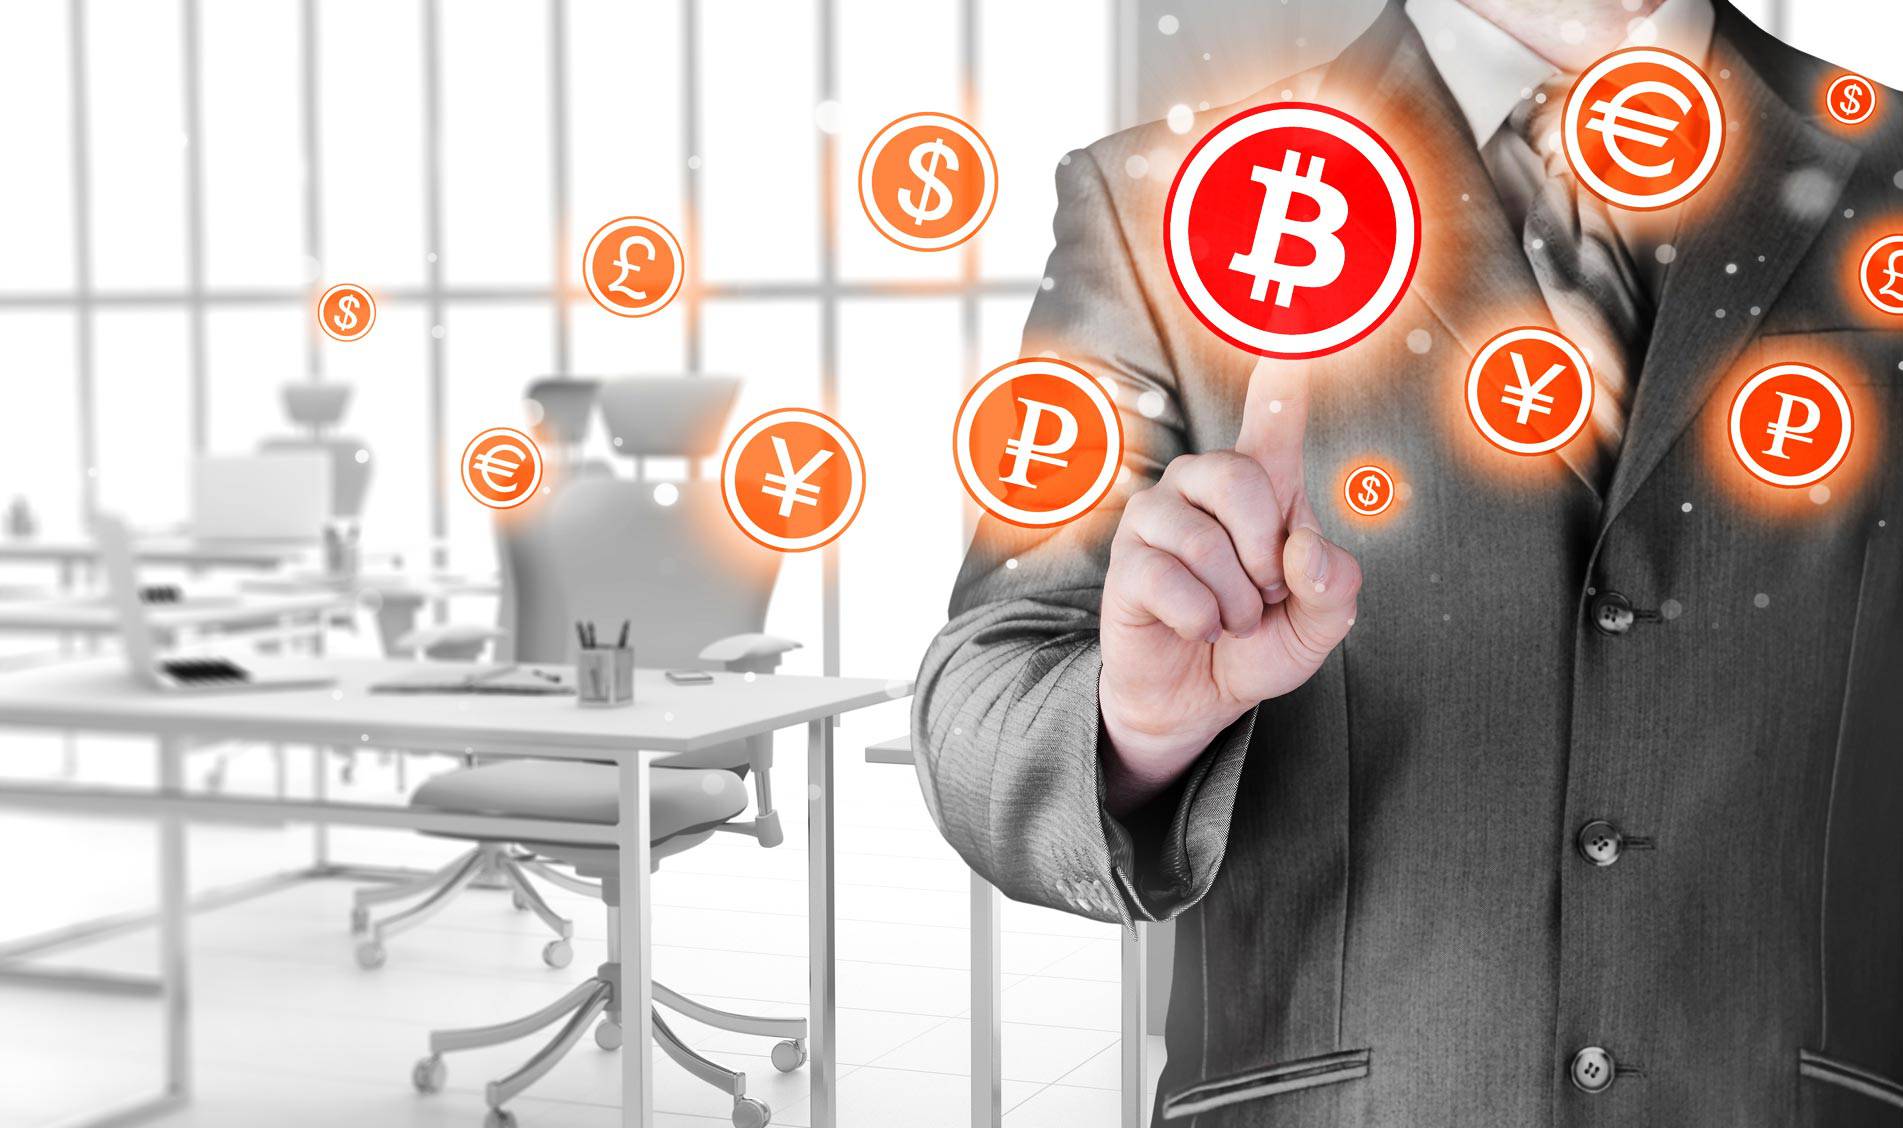 Subida Bitcoin: el riesgo de jugar con criptomonedas